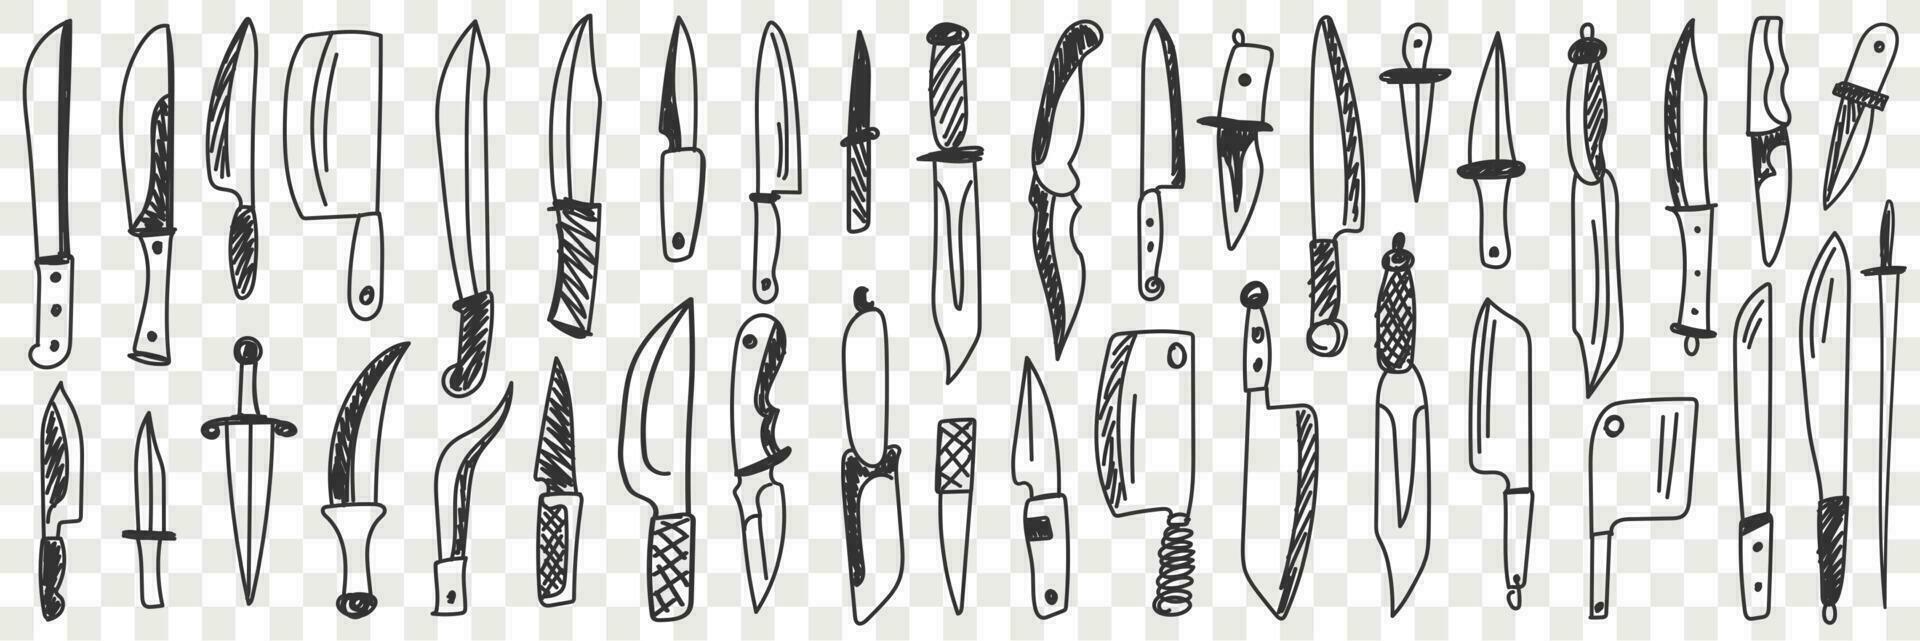 cuchillos para corte garabatear colocar. colección de mano dibujado varios mesa y cocina cuchillo para Cocinando y corte aislado en transparente vector